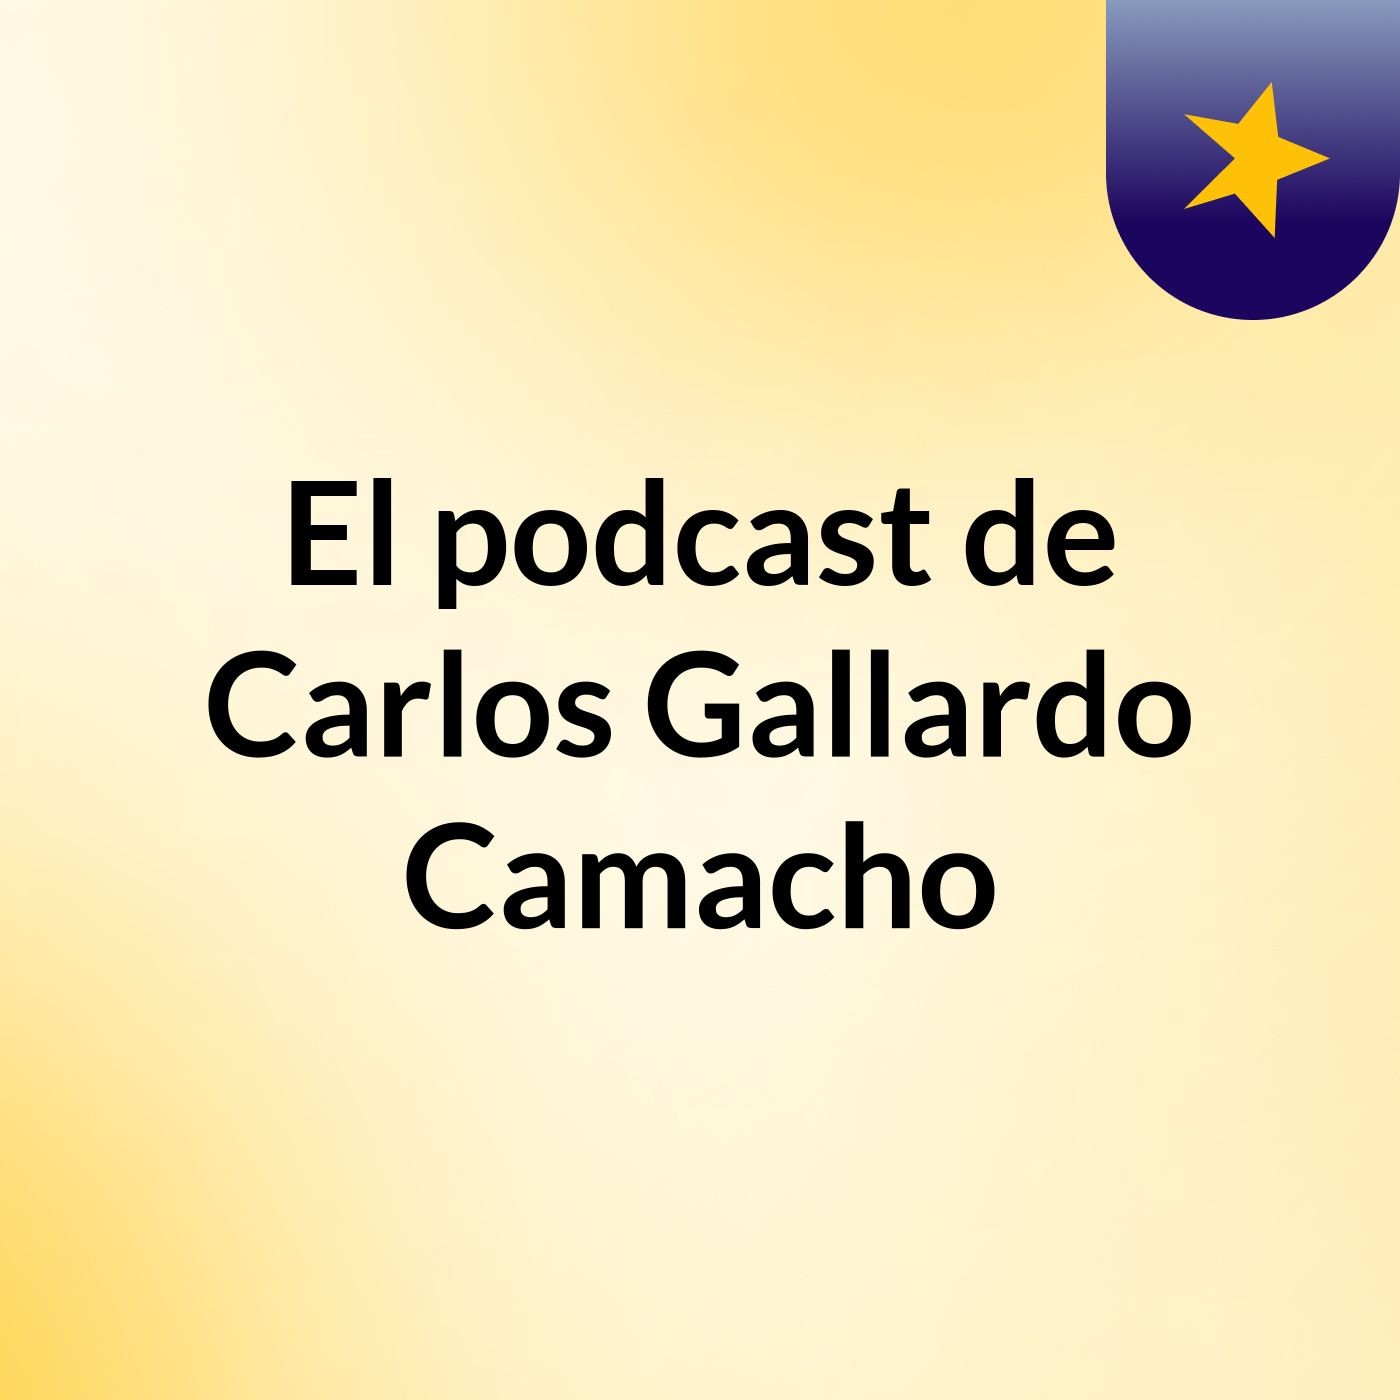 Episodio 9 - El podcast de Carlos Gallardo Camacho